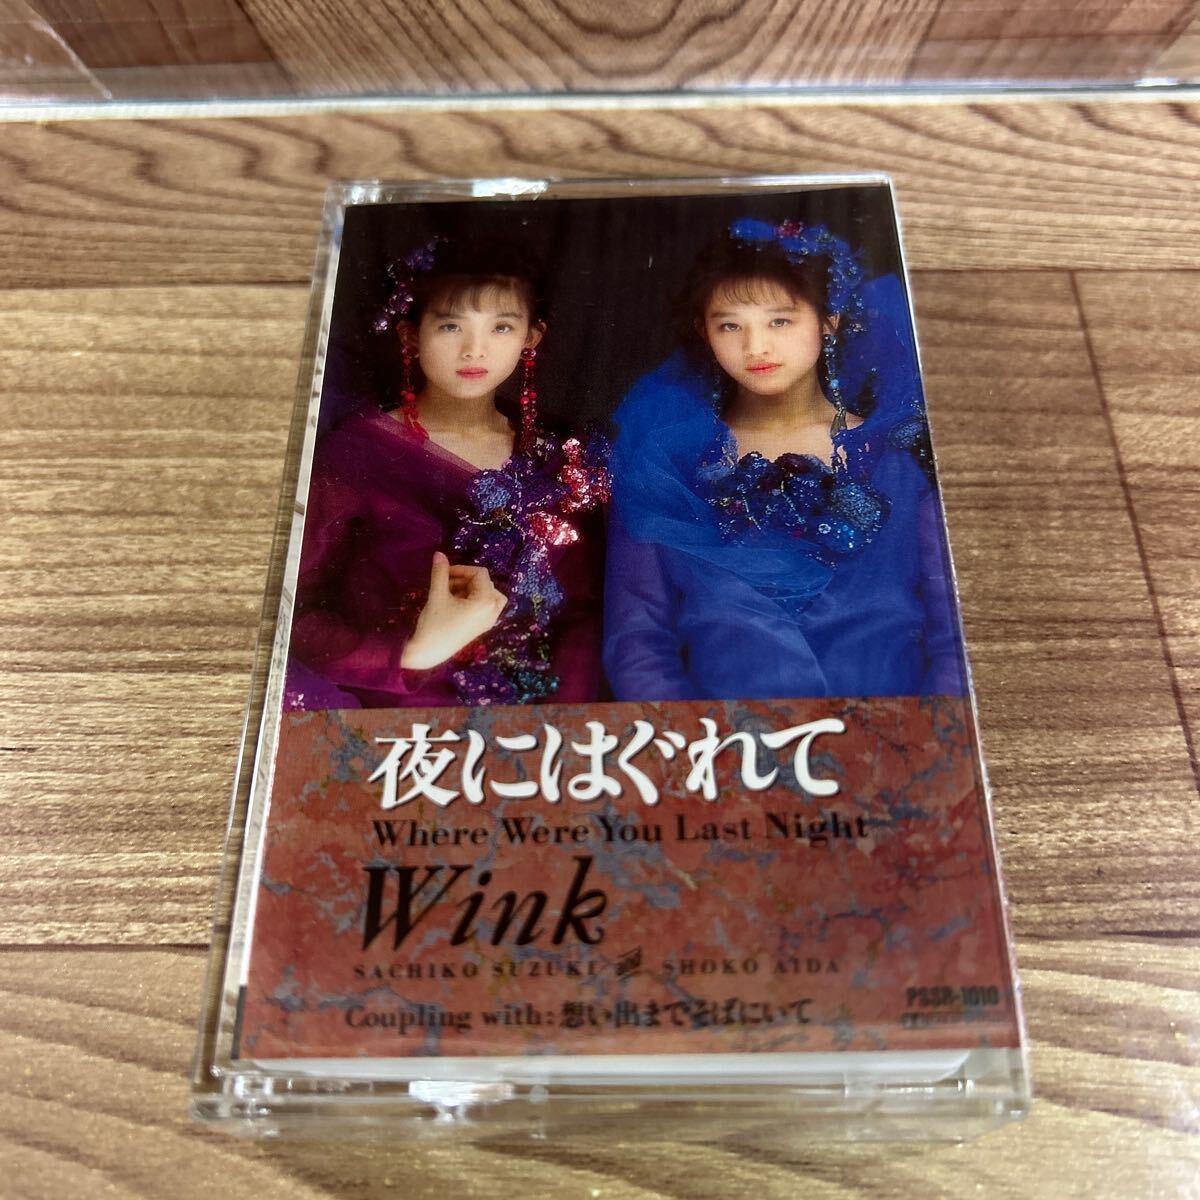 シングル カセット「ウィンク/Wink // 夜にはぐれて」歌詞付き_画像1